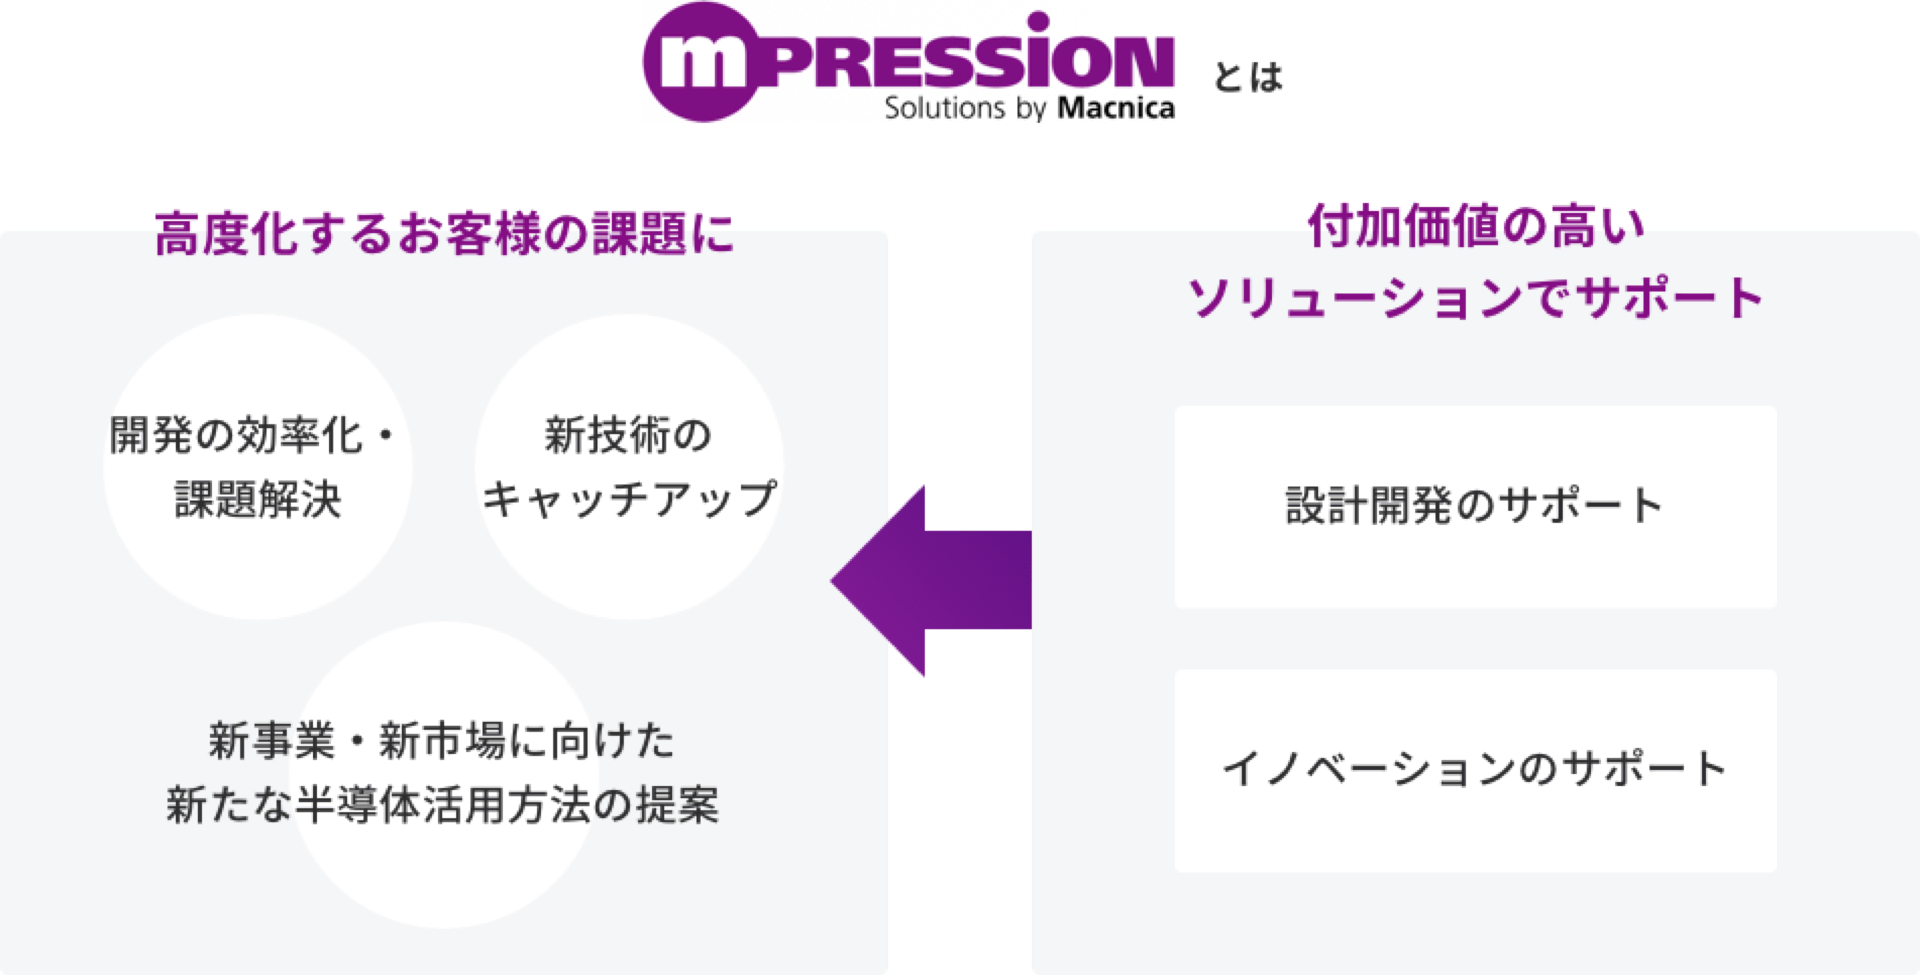 マクニカのオリジナル技術ブランド Mpressionの画像